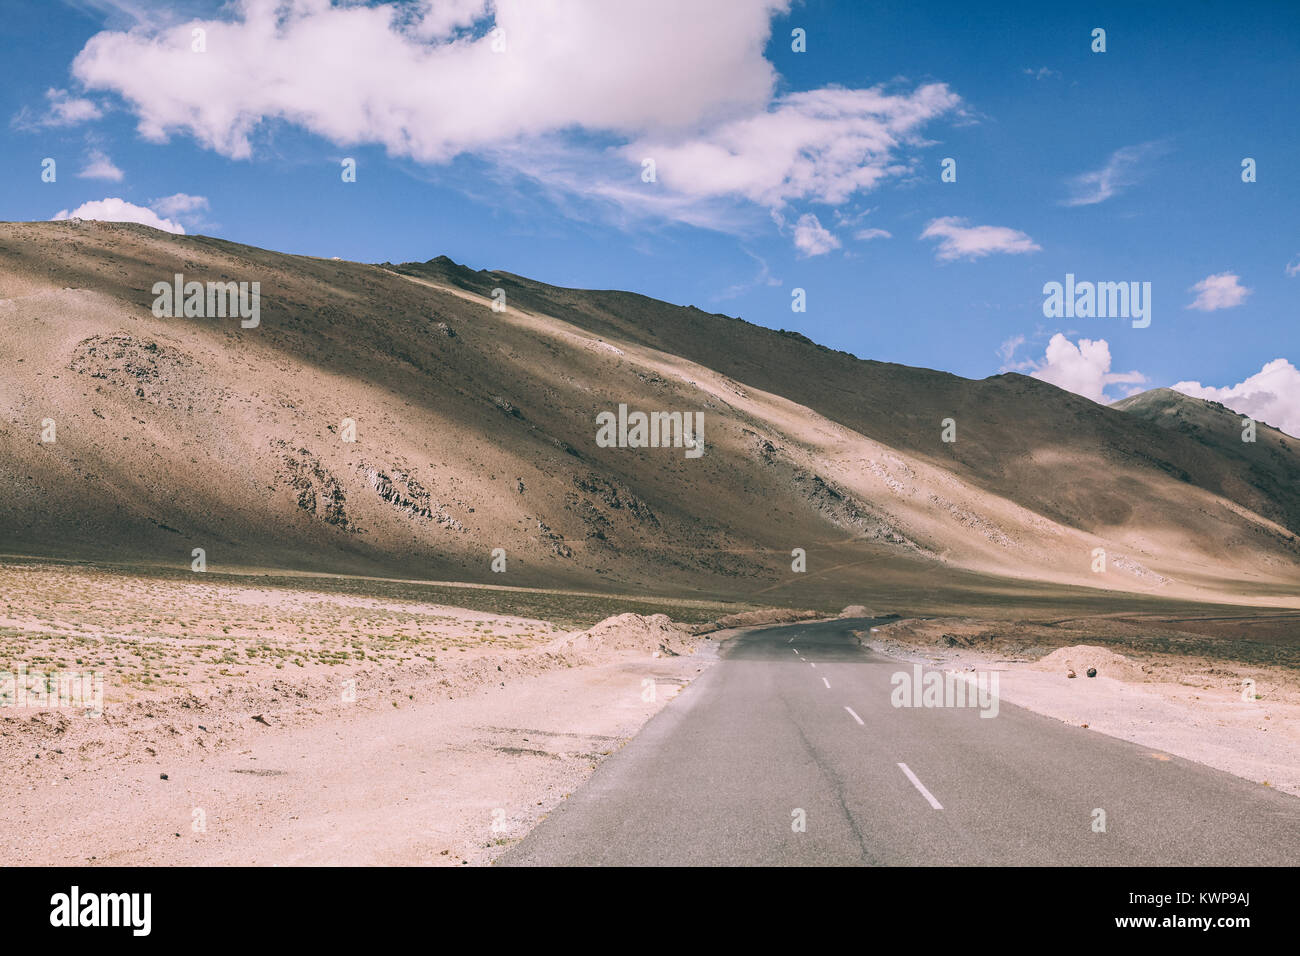 Route asphaltée à vide dans la vallée de montagne Himalaya Indien Banque D'Images